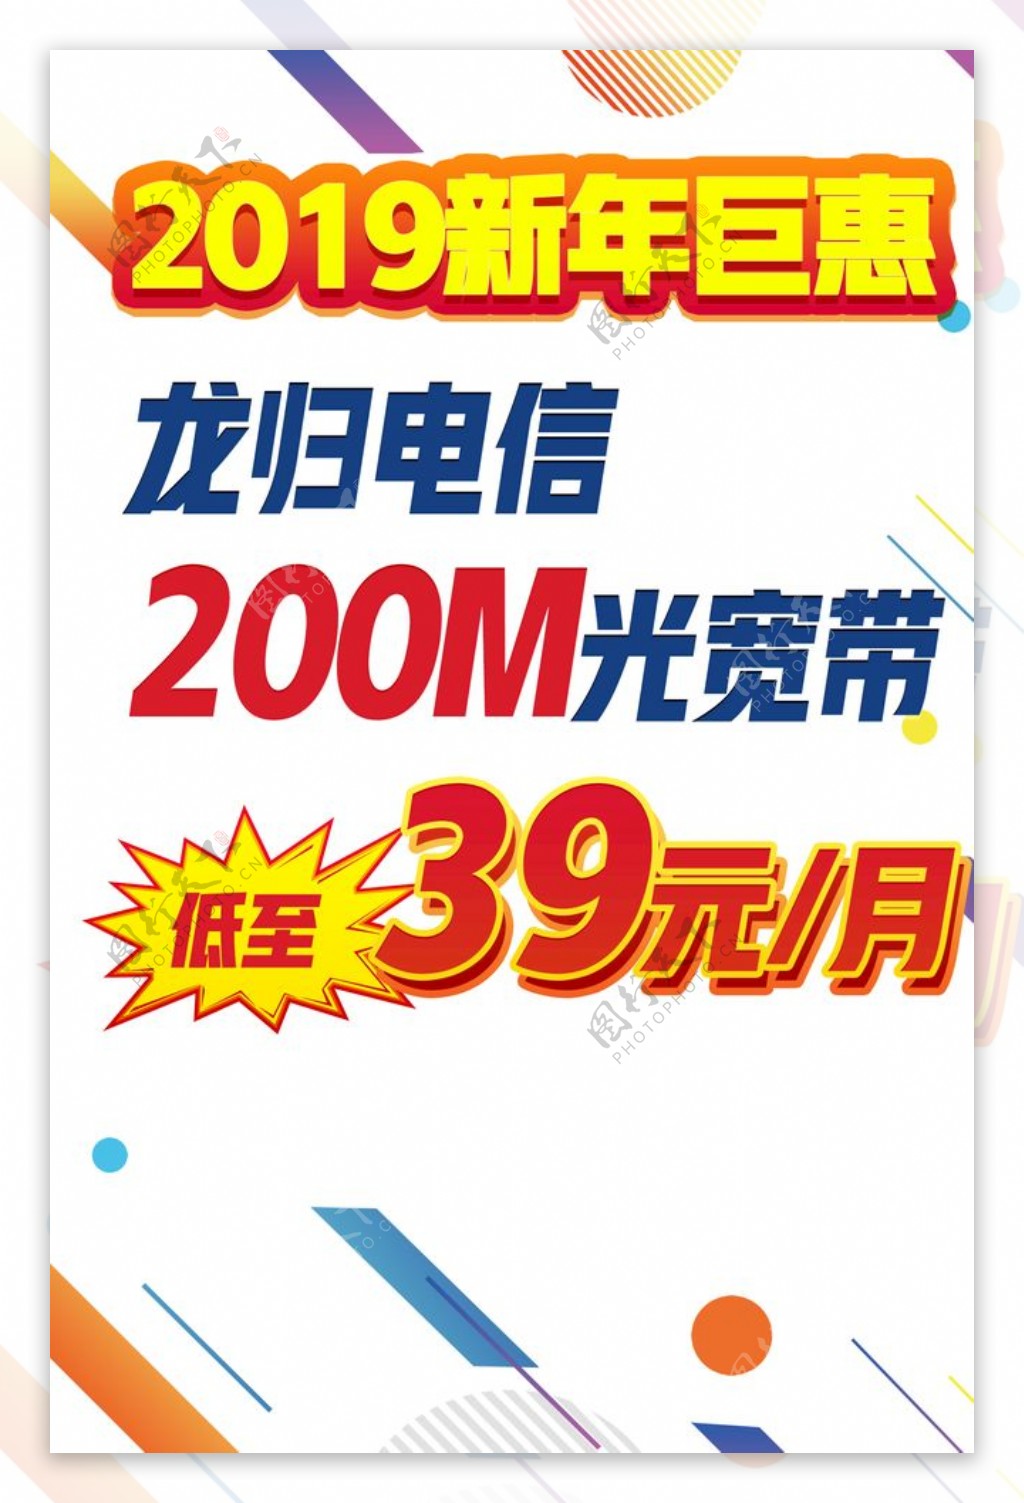 电信新年巨惠海报